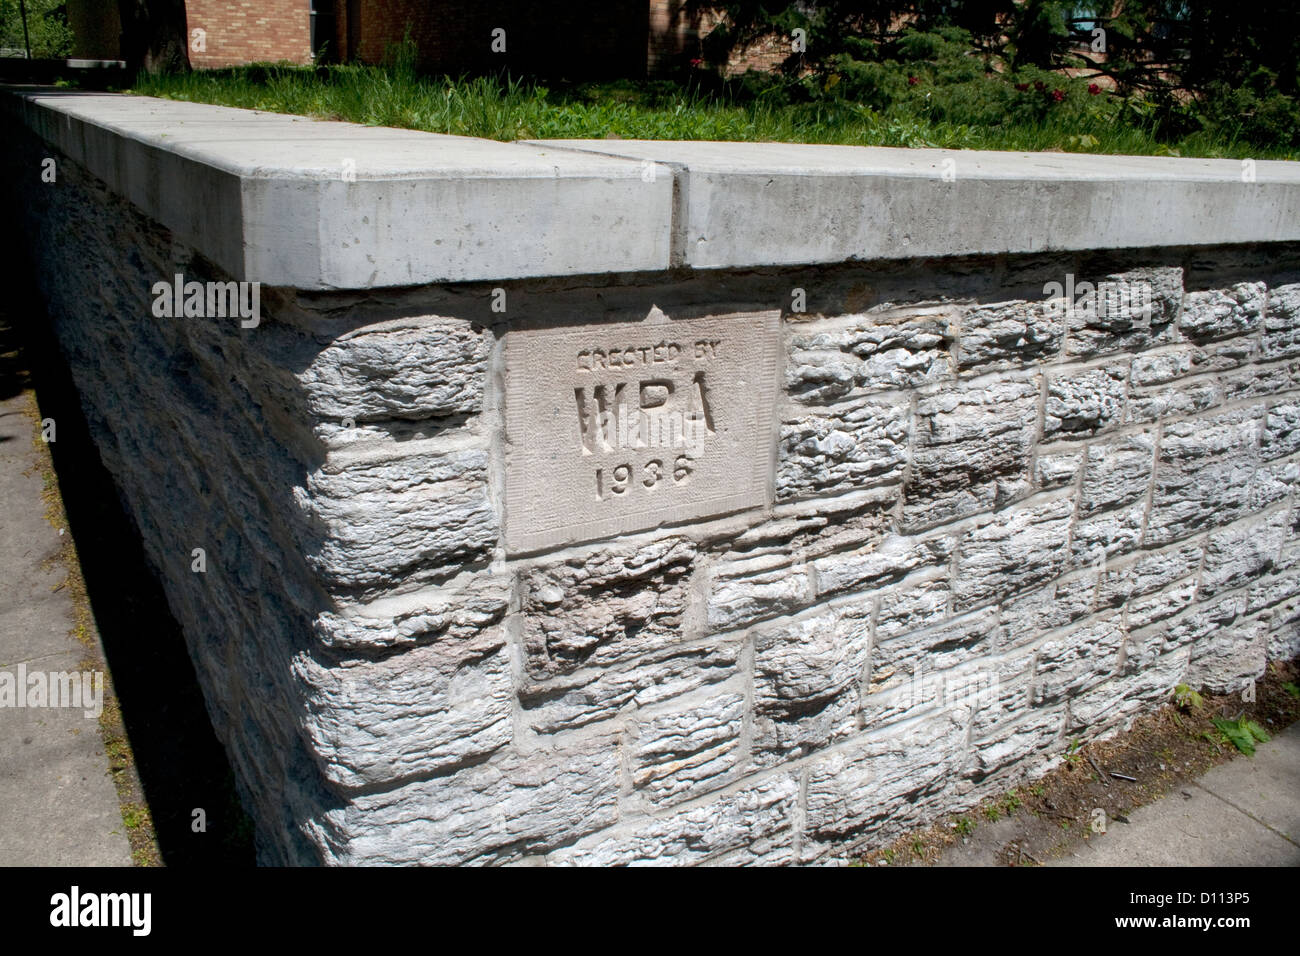 WPA funktioniert Projekt Verwaltung 1936 Zeichen auf Mauer außerhalb von Horace Mann-Grundschule. St Paul Minnesota MN USA Stockfoto